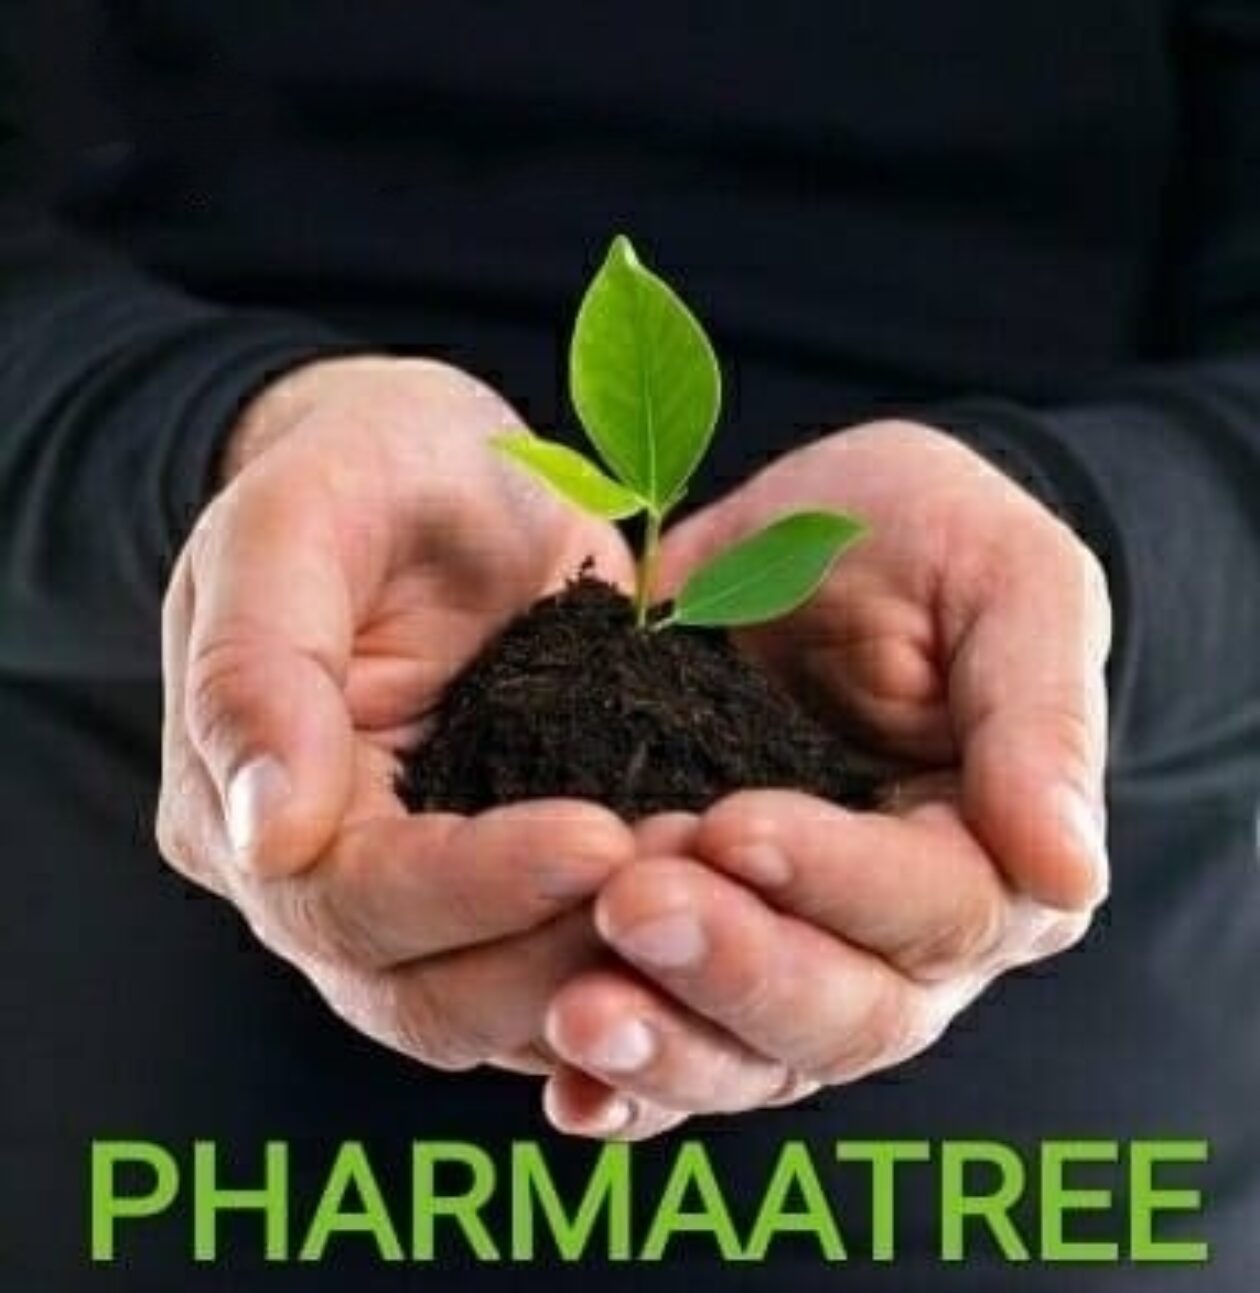 www.pharmaatree.in